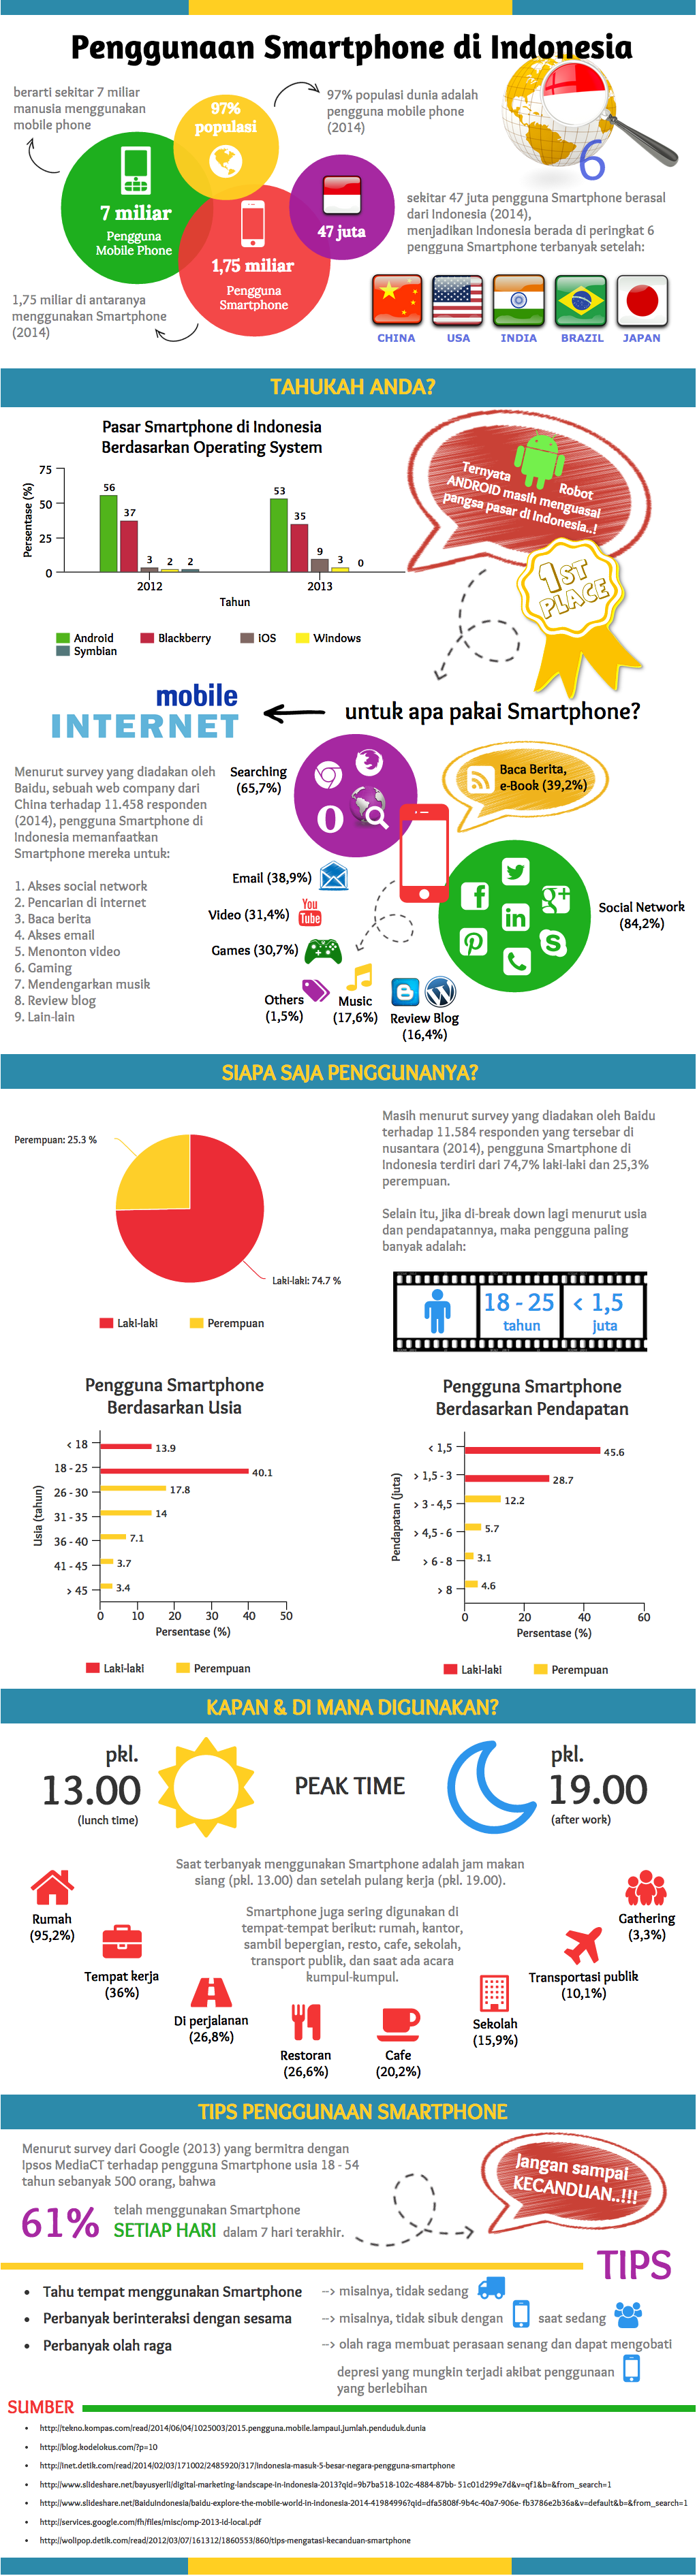 Penggunaan Smartphone di Indonesia - Infografis